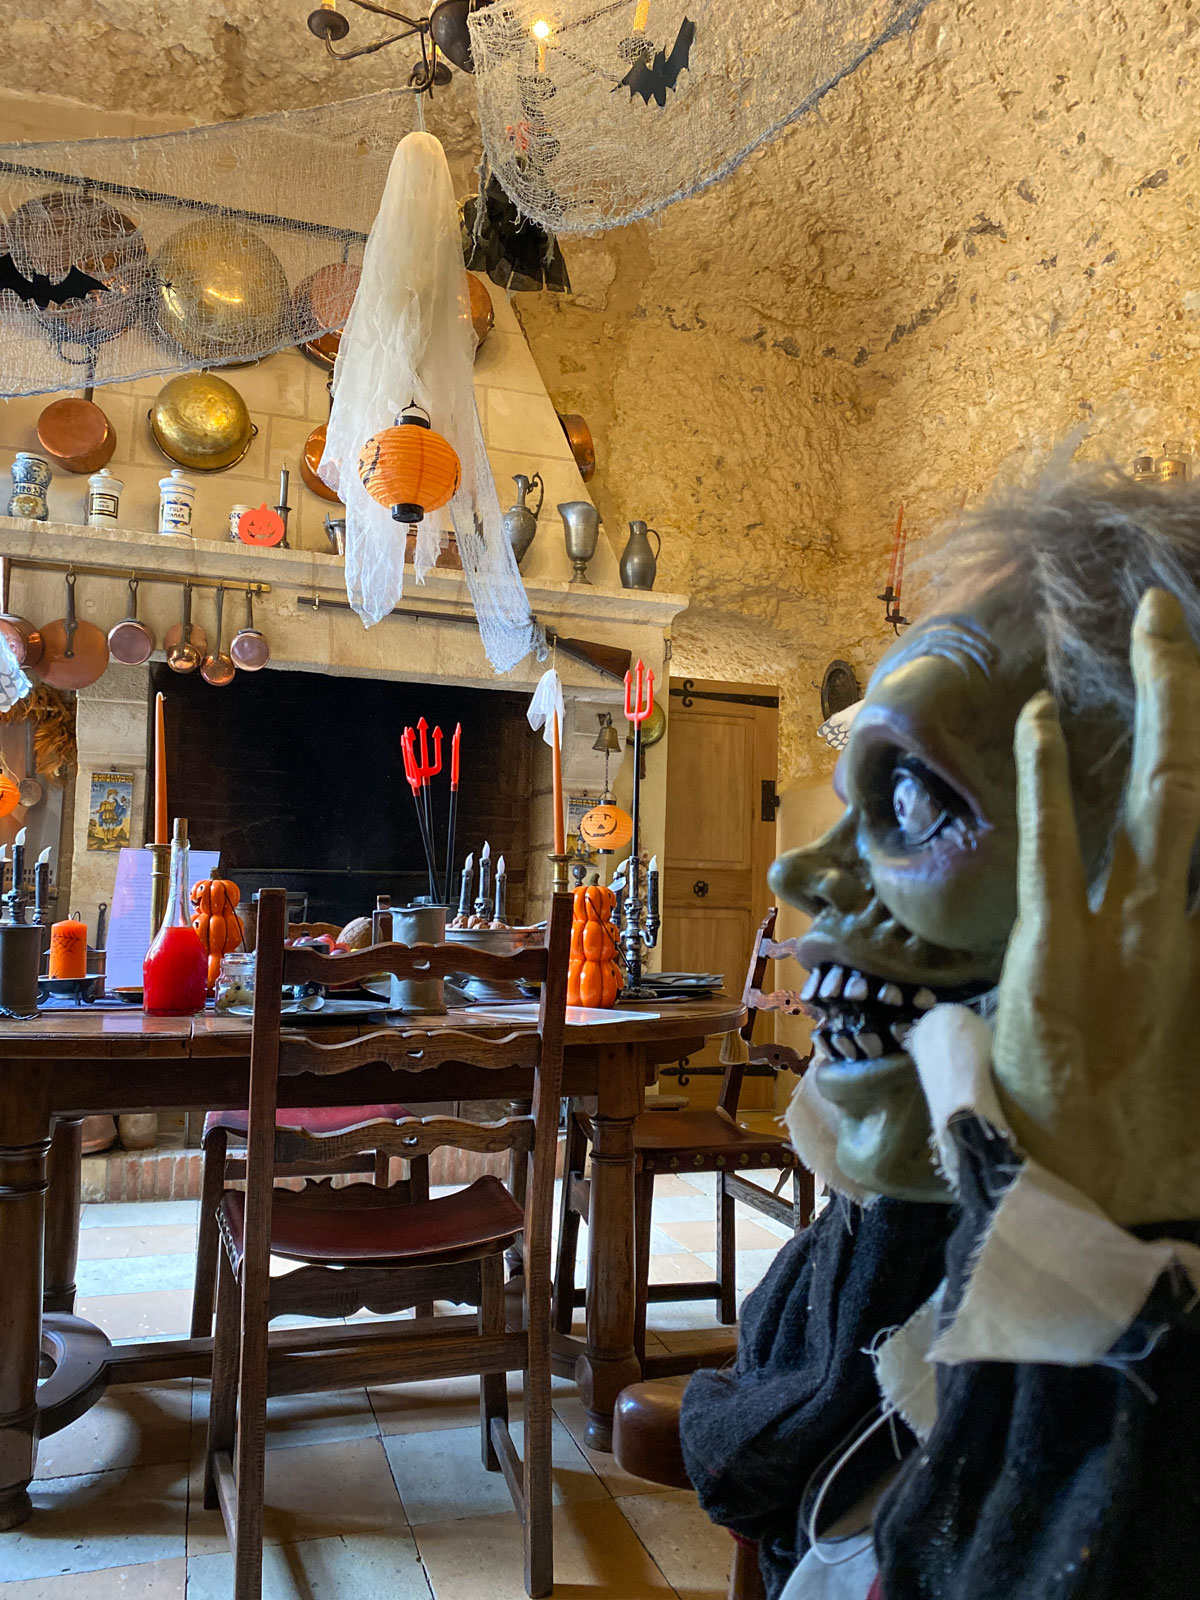 Halloween à château Gaillard, à Amboise : un château presque hanté, avec ses monstres, ses toiles d'araignées... brrr !